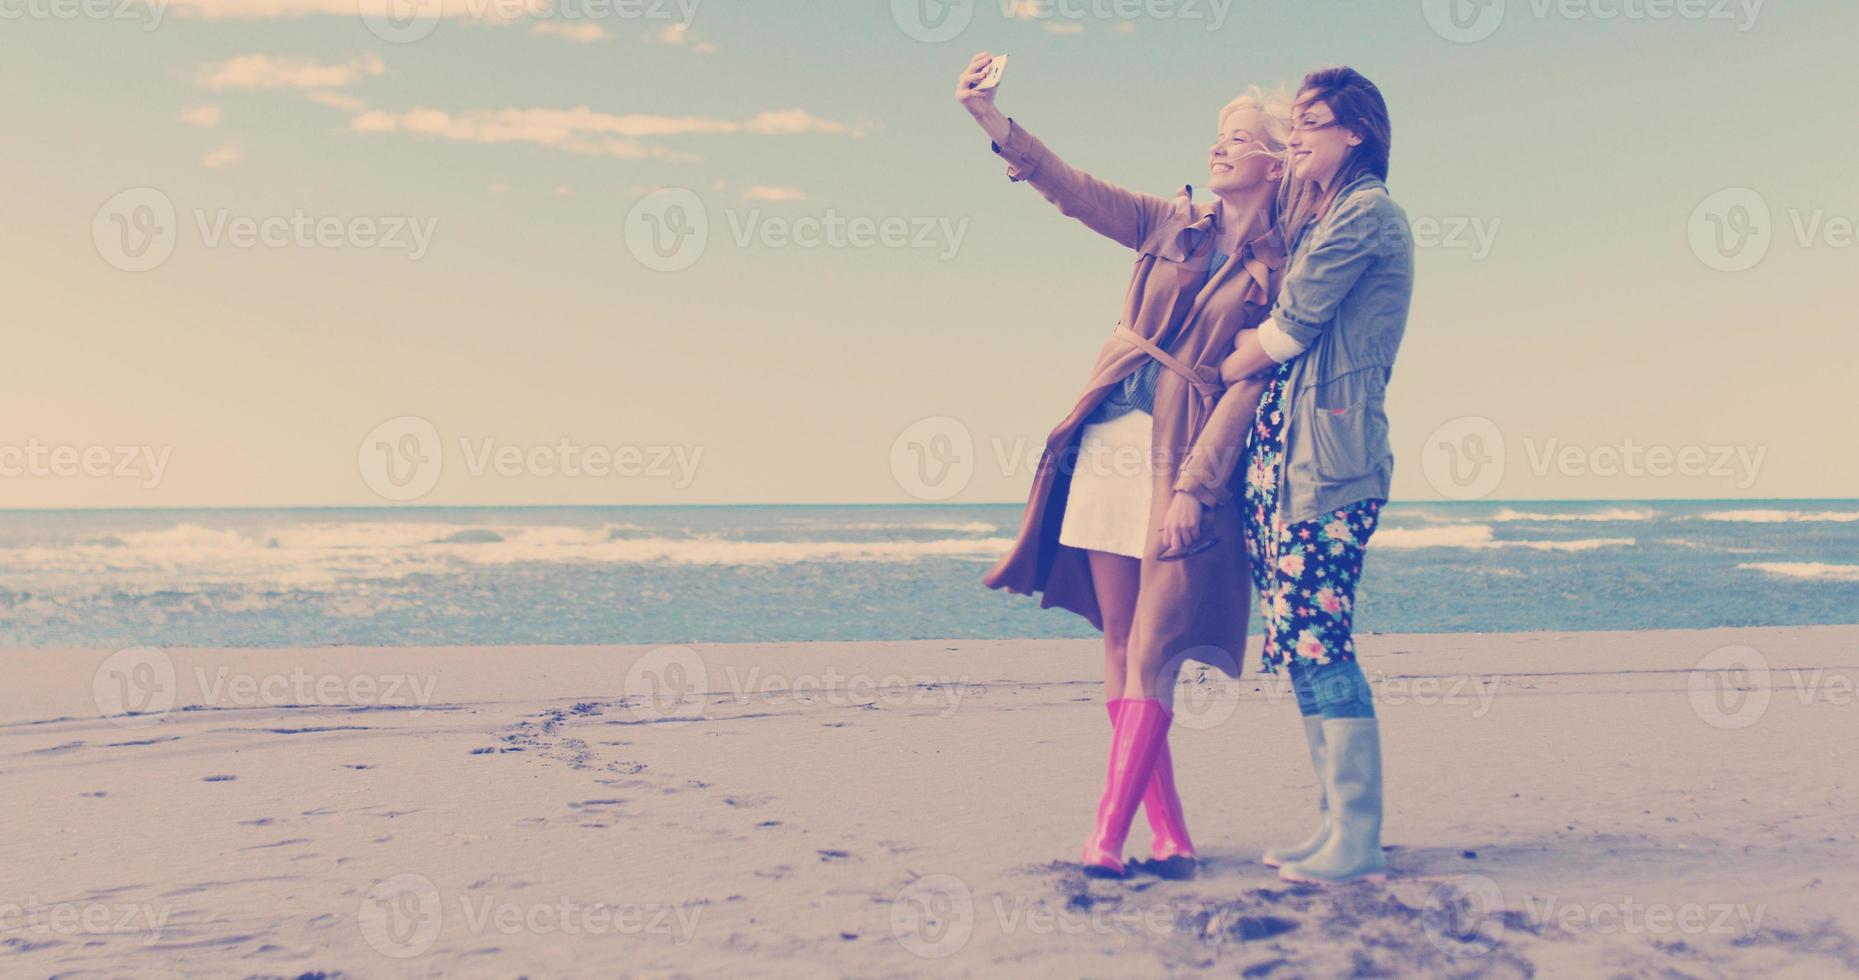 meisjes hebben tijd en nemen selfie Aan een strand foto